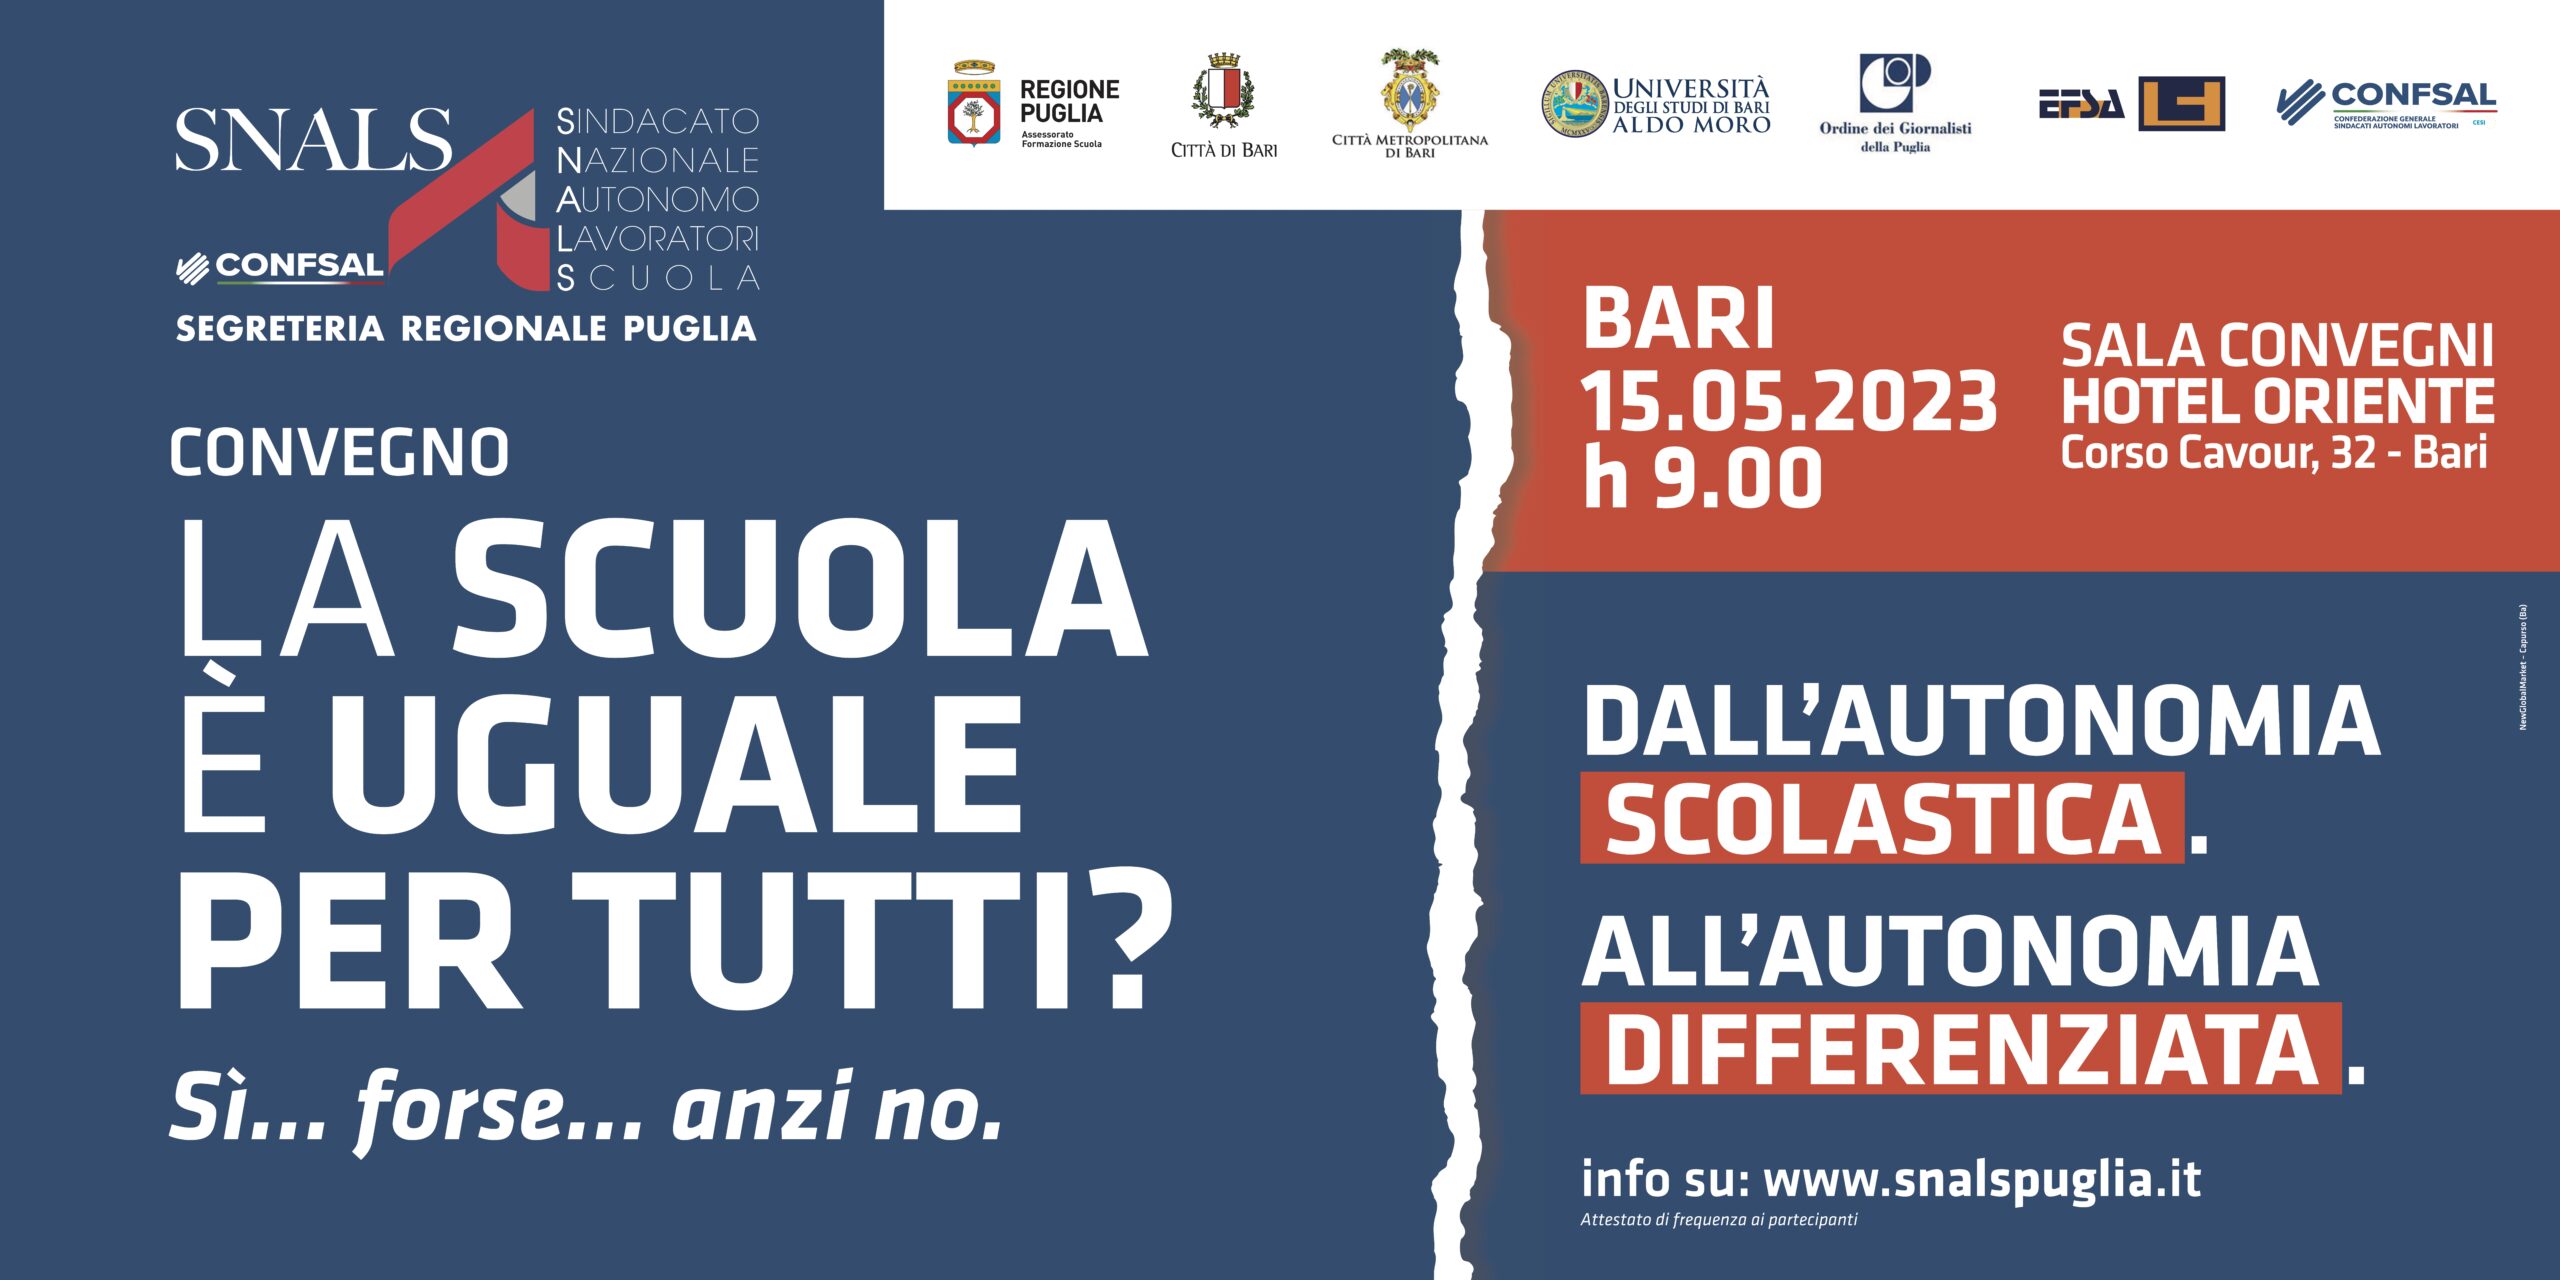 Al momento stai visualizzando La scuola pubblica italiana è uguale per tutti? Sì, forse, anzi no: lunedi 15 il convegno dello Snals-Confsal Puglia